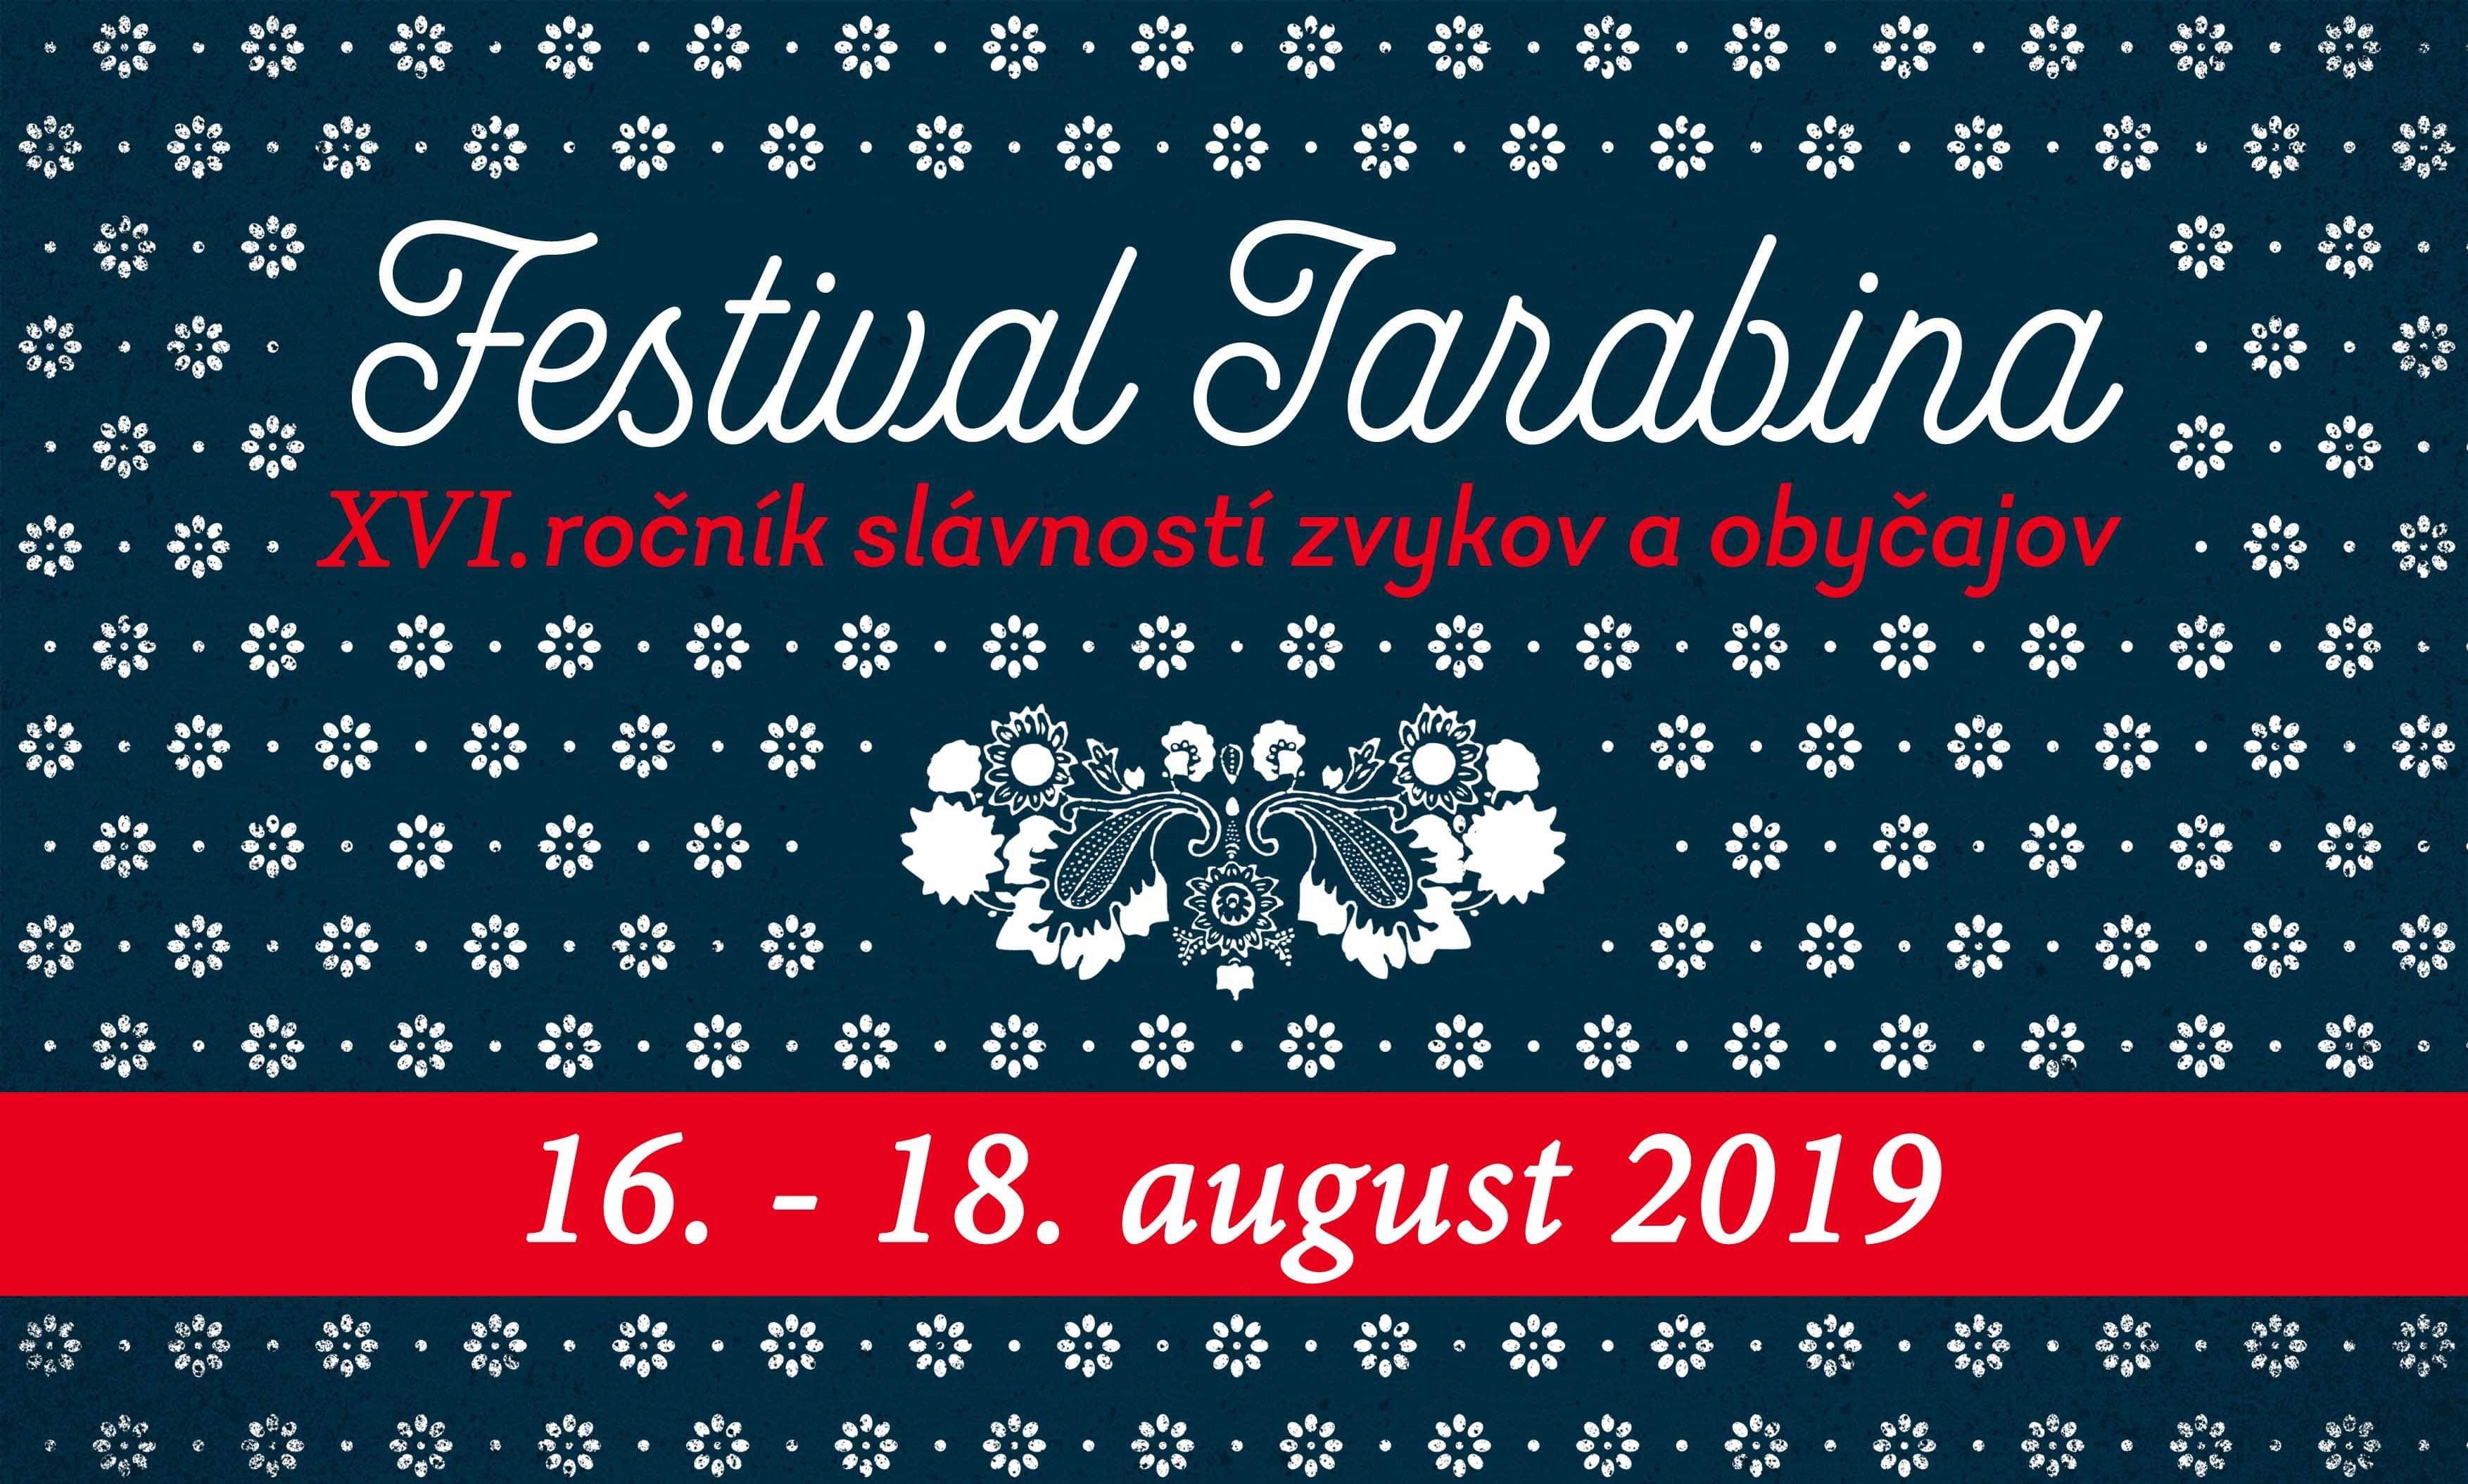 Festival Jarabina 2019 - 16.ronk slvnost zvykov a obyajov a 690 rokov od prvej psomnej zmienky o obci